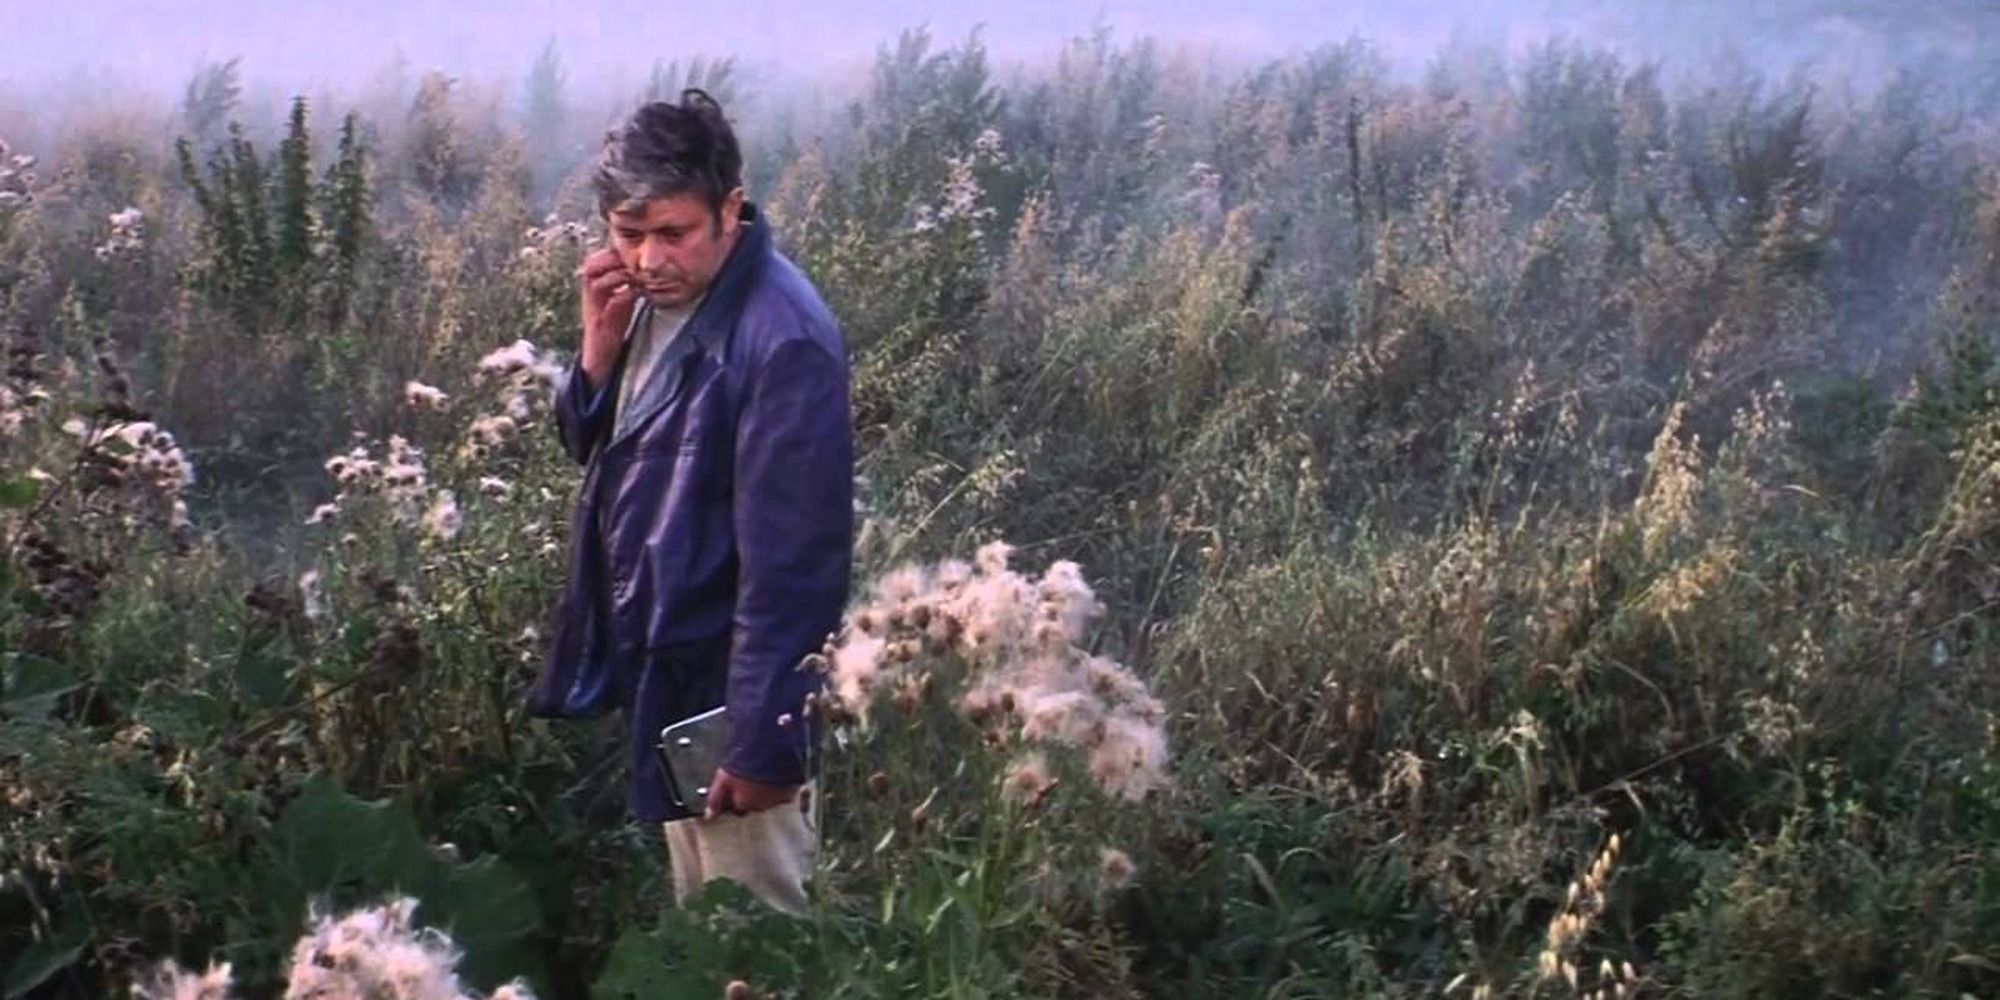 Un homme contemplant son environnement dans un champ herbeux plein de plantes luxuriantes